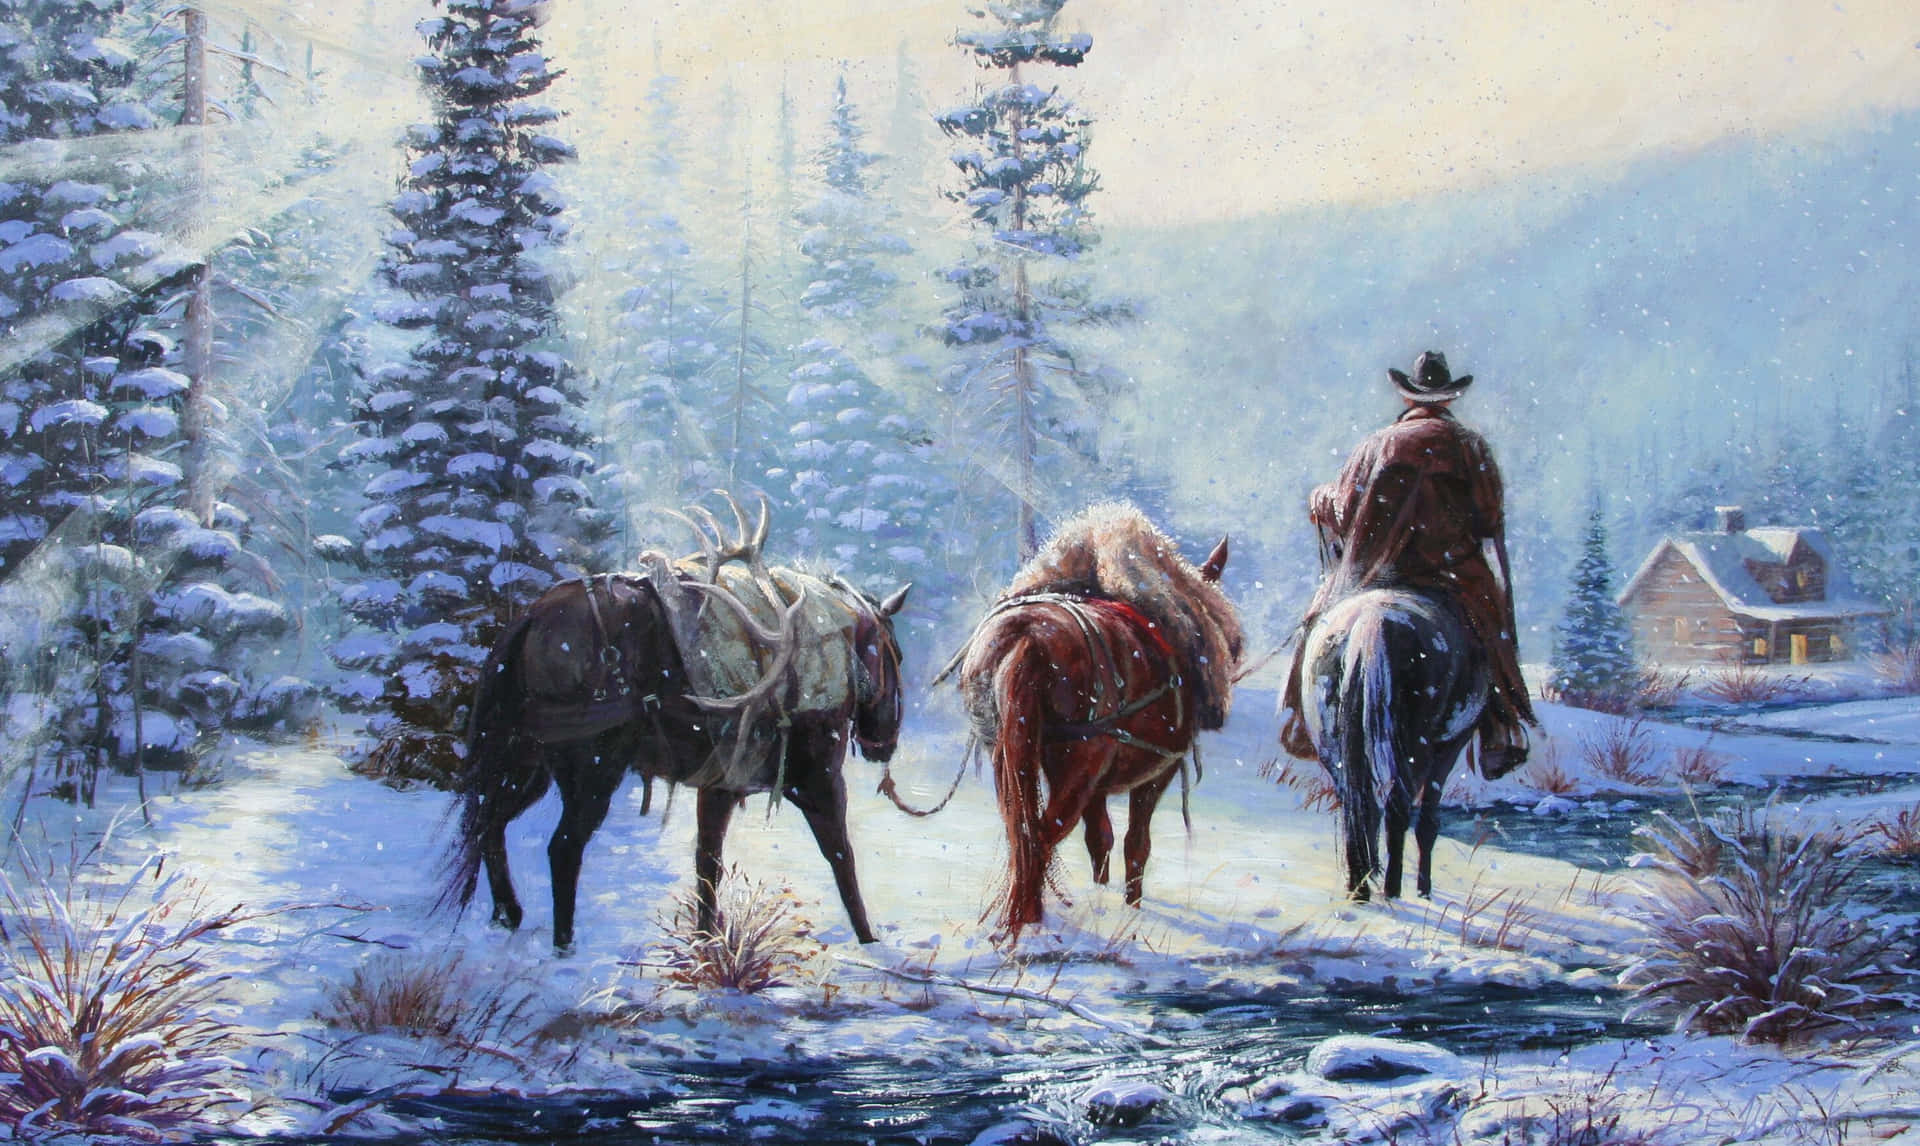 Tag et break fra stien og nyd Cowboy Julefestivalen! Wallpaper